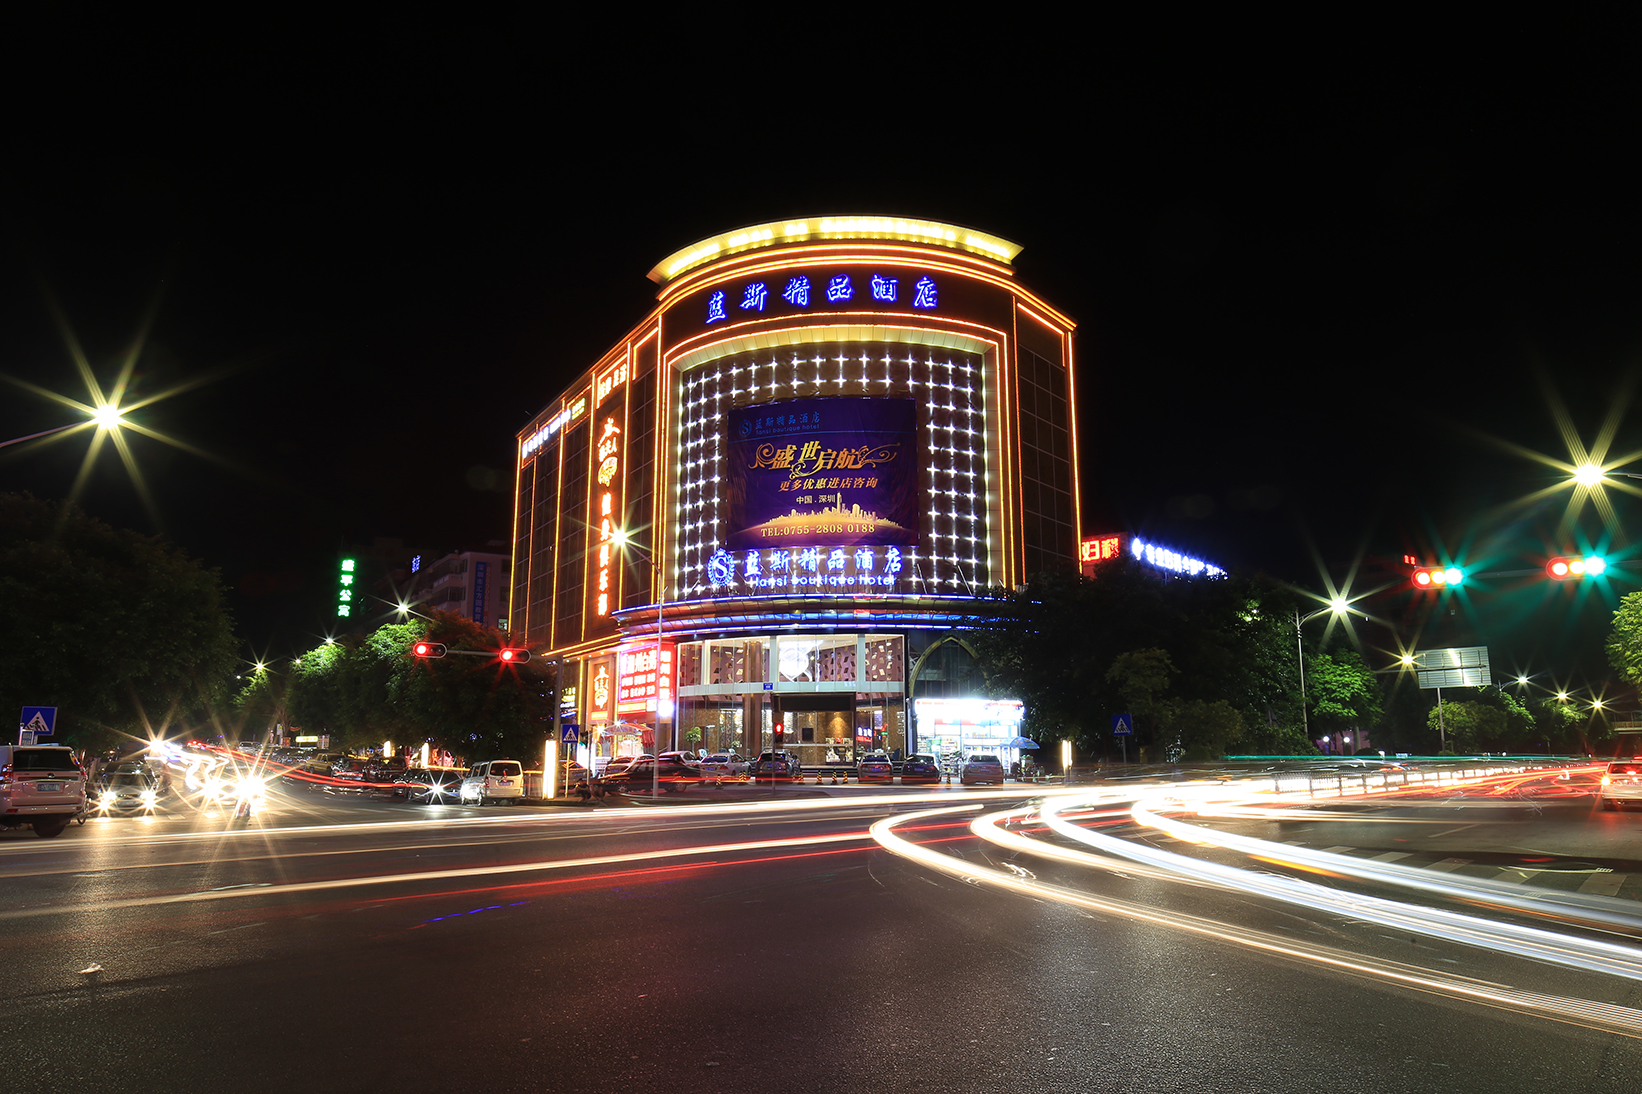 深圳市藍斯酒店有限公司